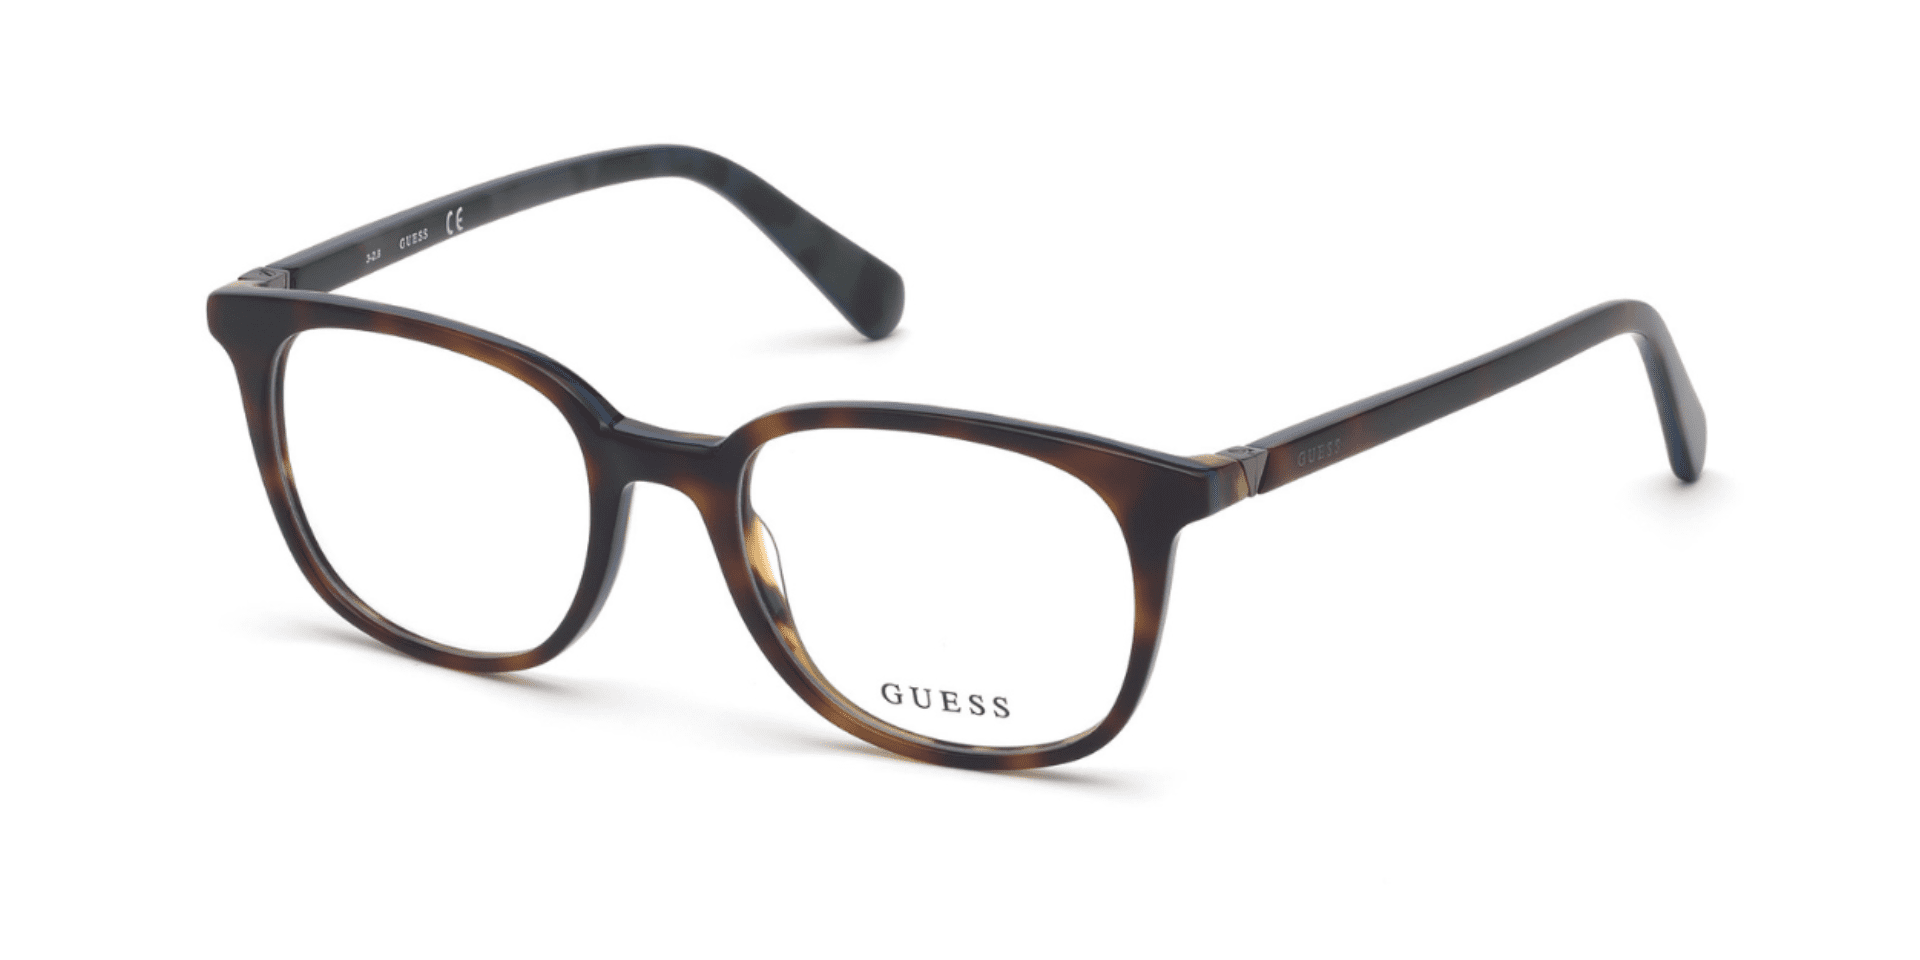 Óculos de Grau Unissex Guess GU 1979 - Foto 1